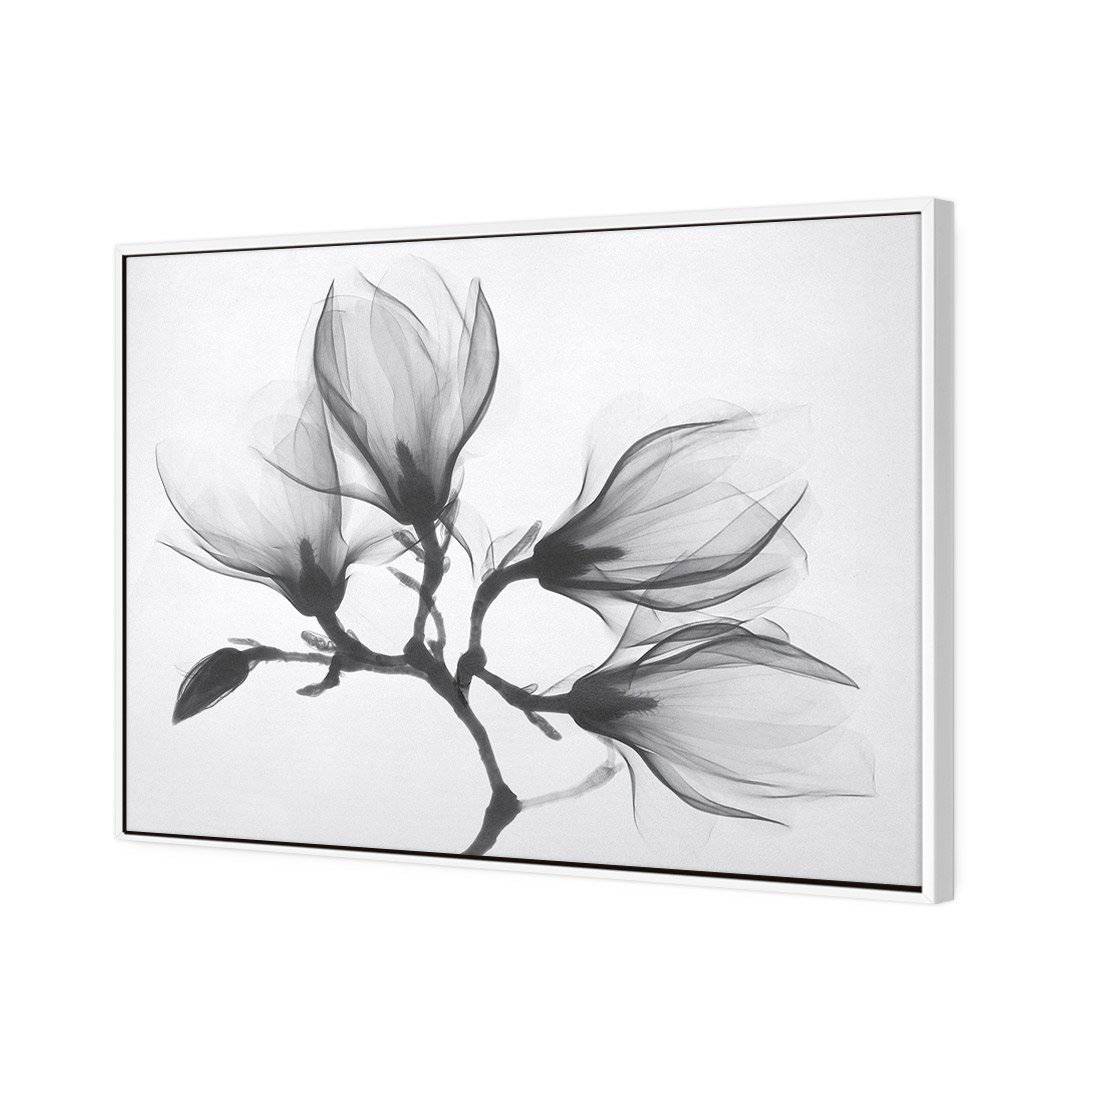 Magnolia Blossoms Canvas Art-Canvas-Wall Art Designs-45x30cm-Canvas - White Frame-Wall Art Designs